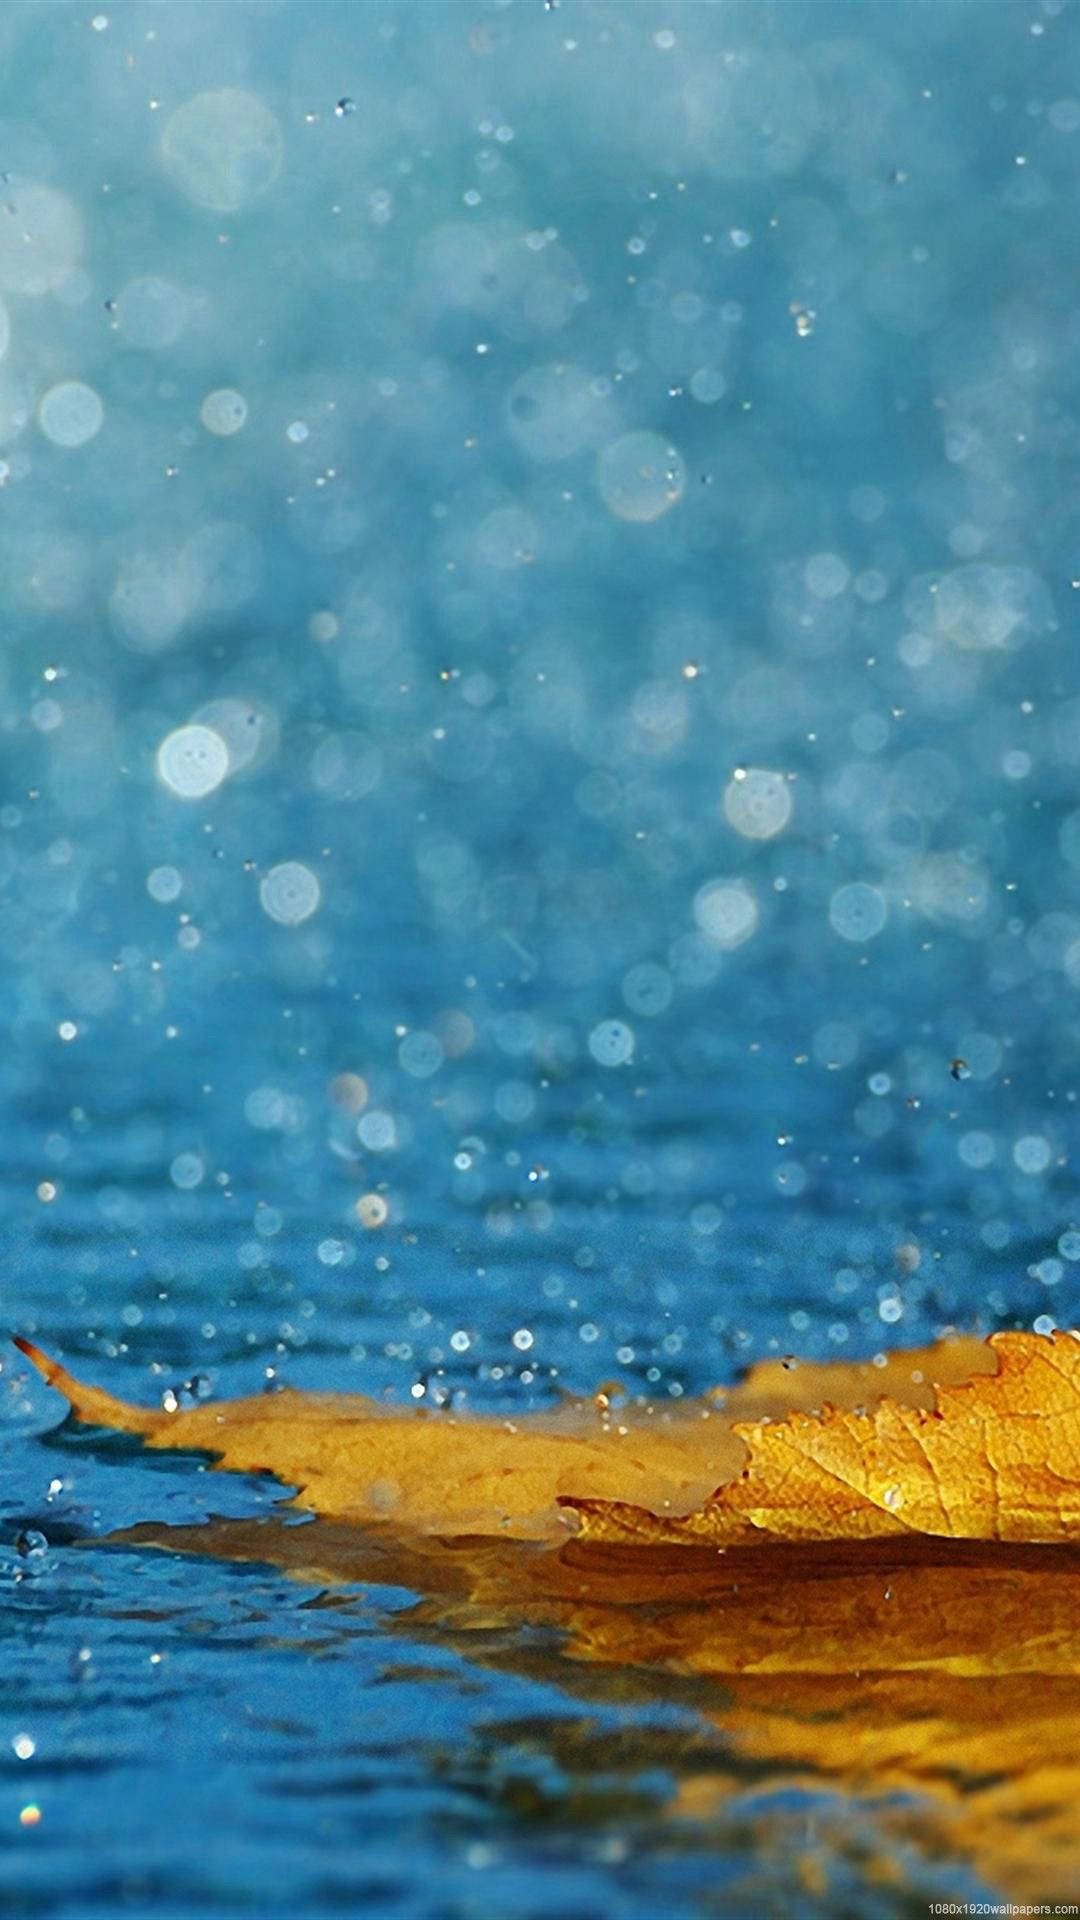  Regen Hintergrundbild 1080x1920. IPhone Regen Wallpaper KOSTENLOS